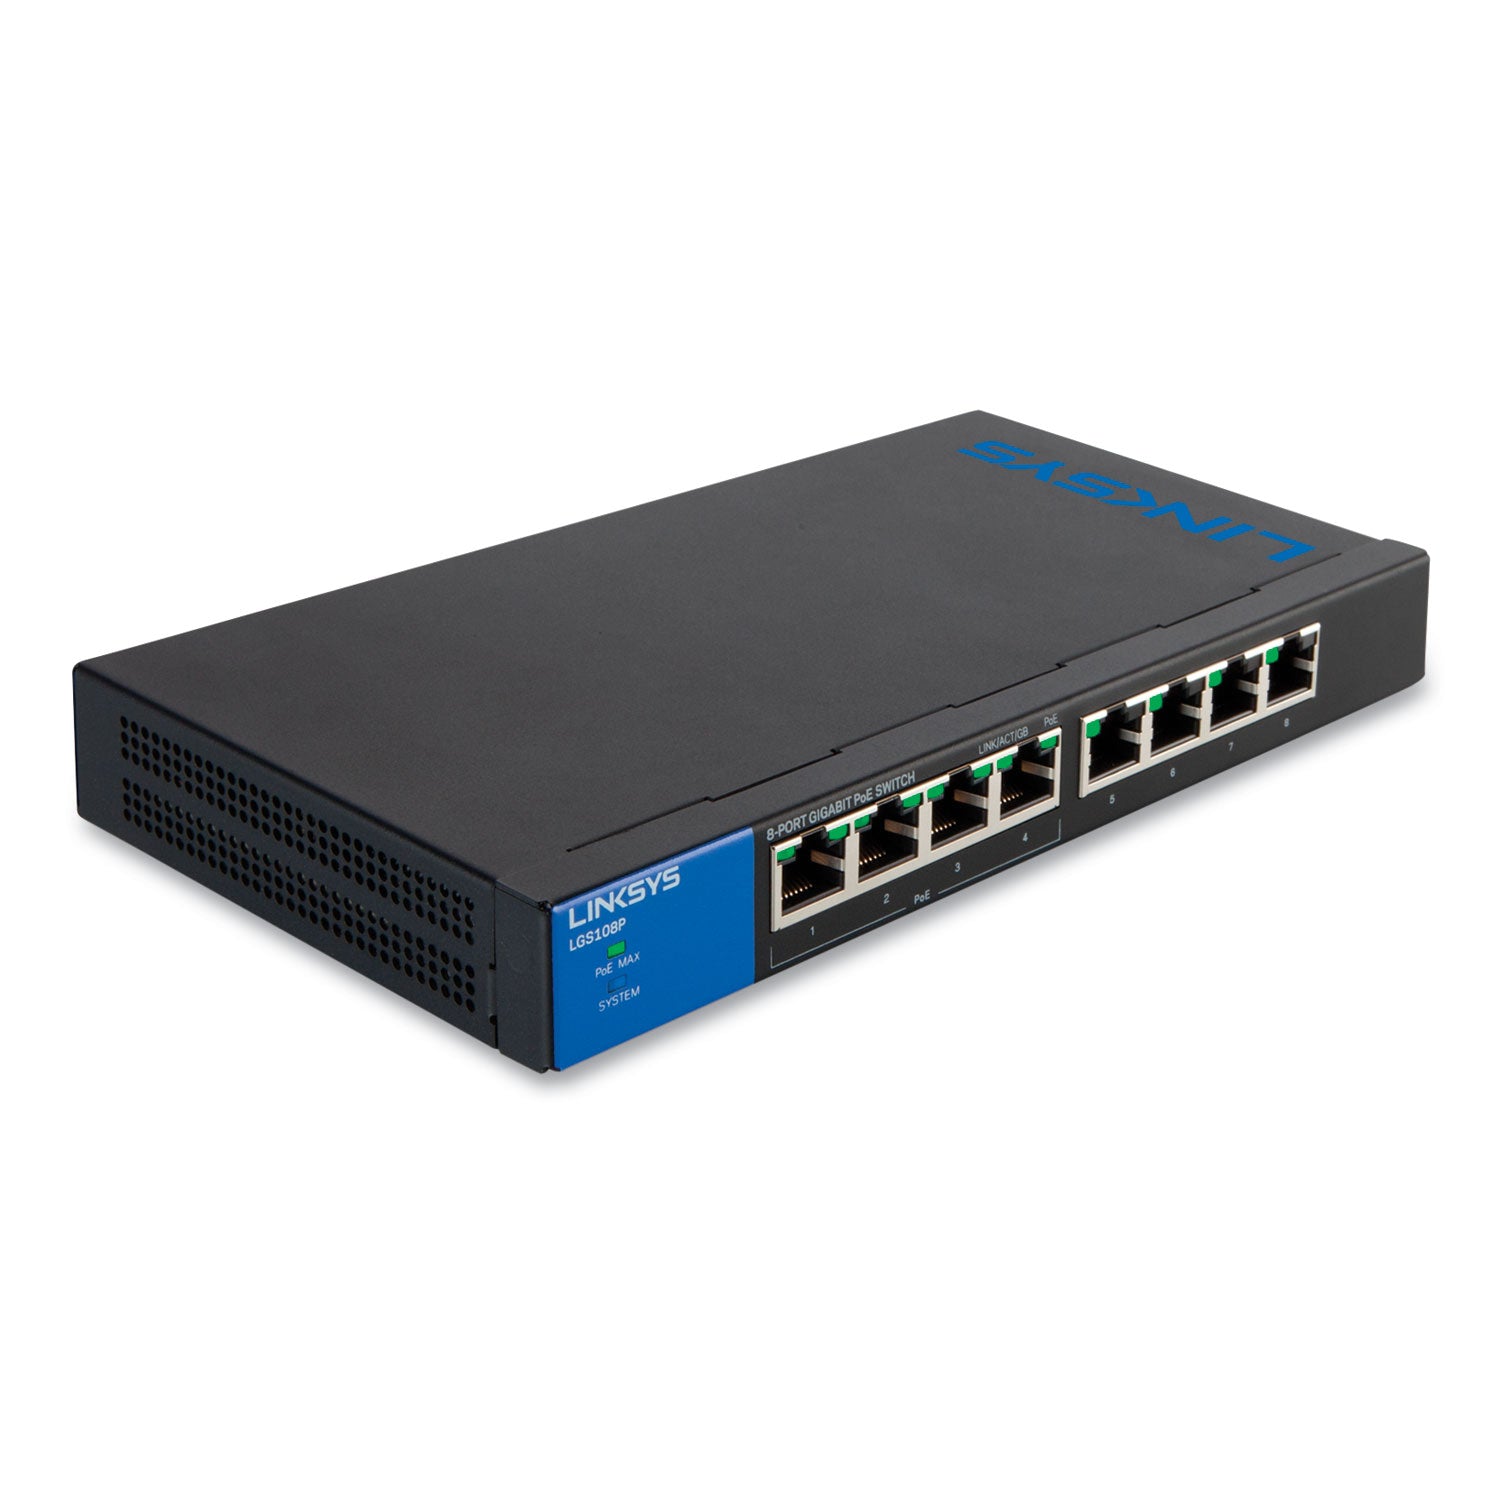 Business Desktop Gigabit Ethernet Switch, 8 Ports - 